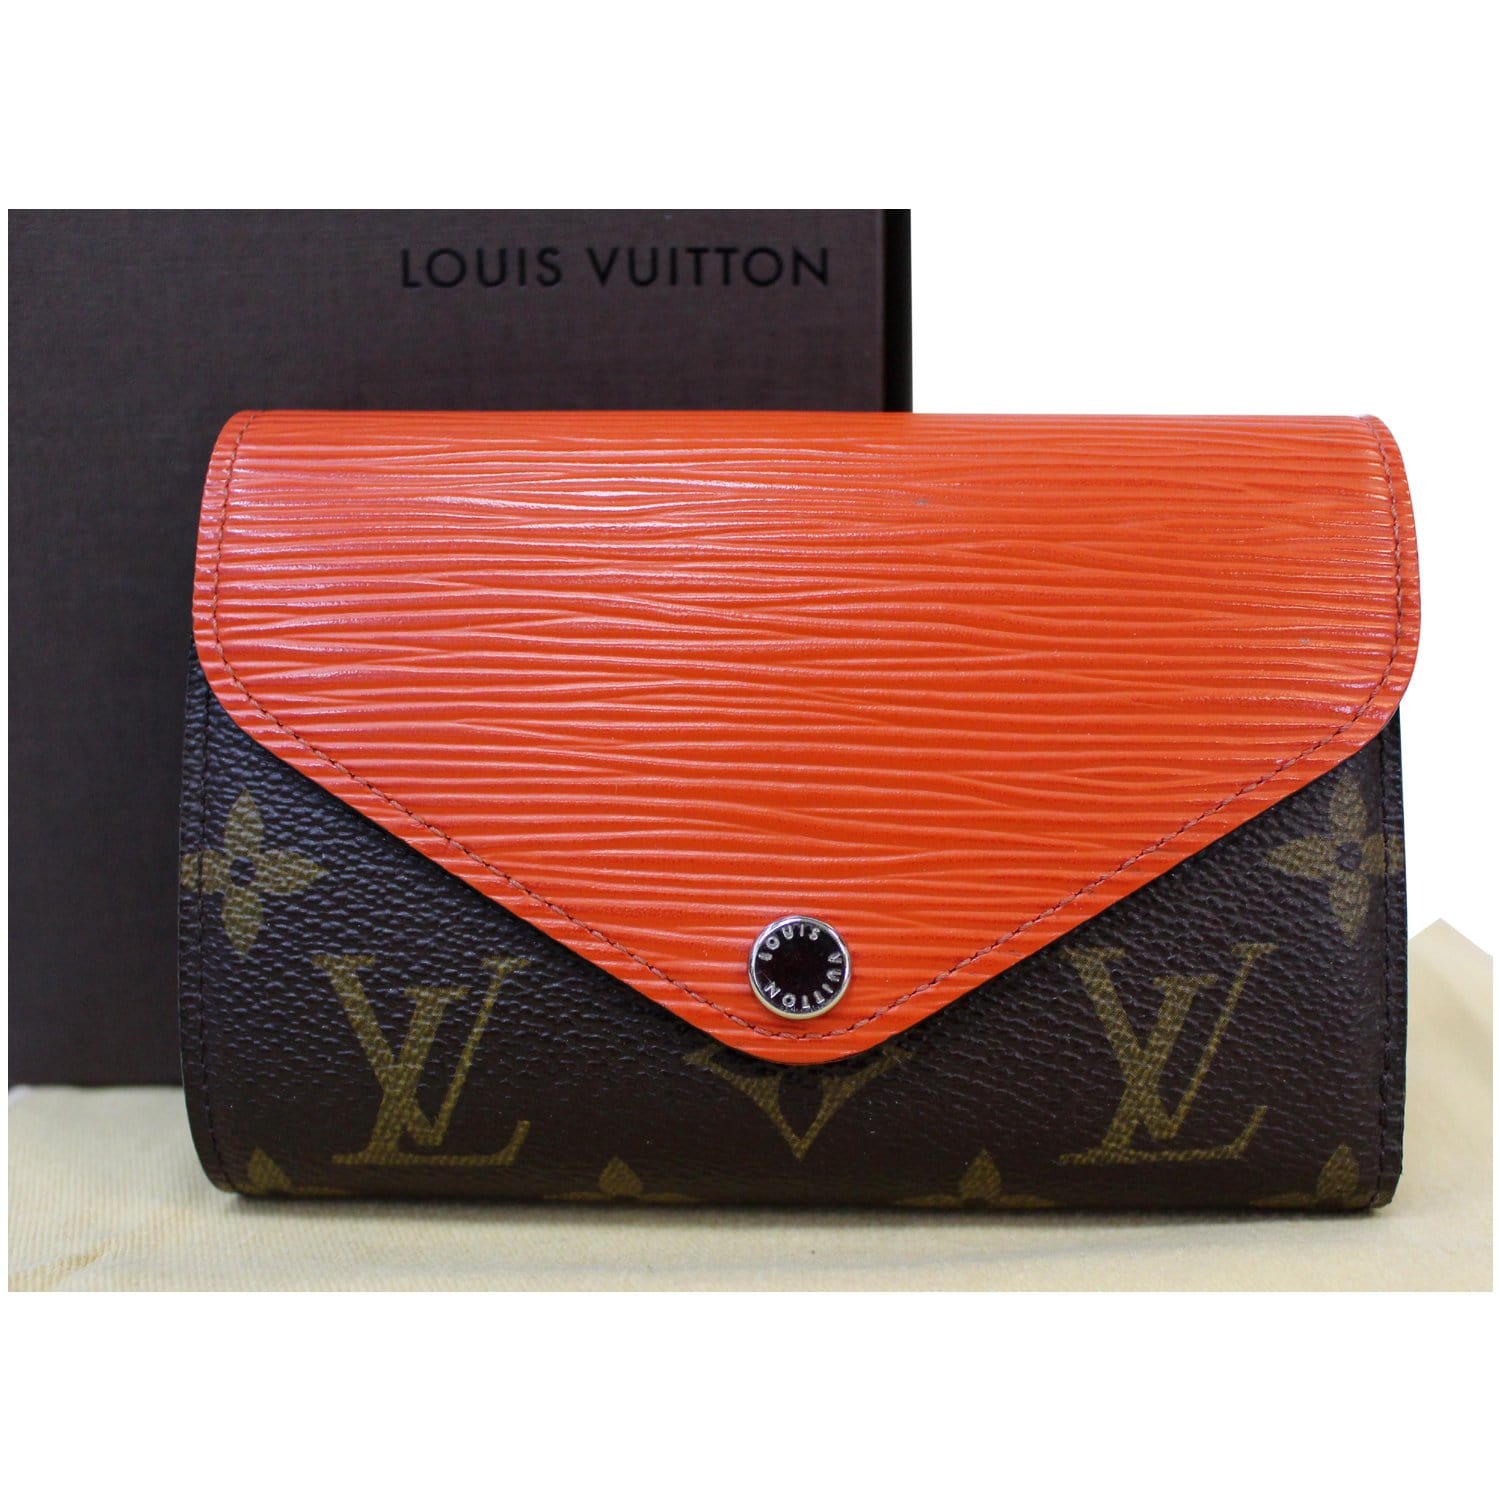 Louis Vuitton 2011 LV Monogram Marie Lou Compact Wallet